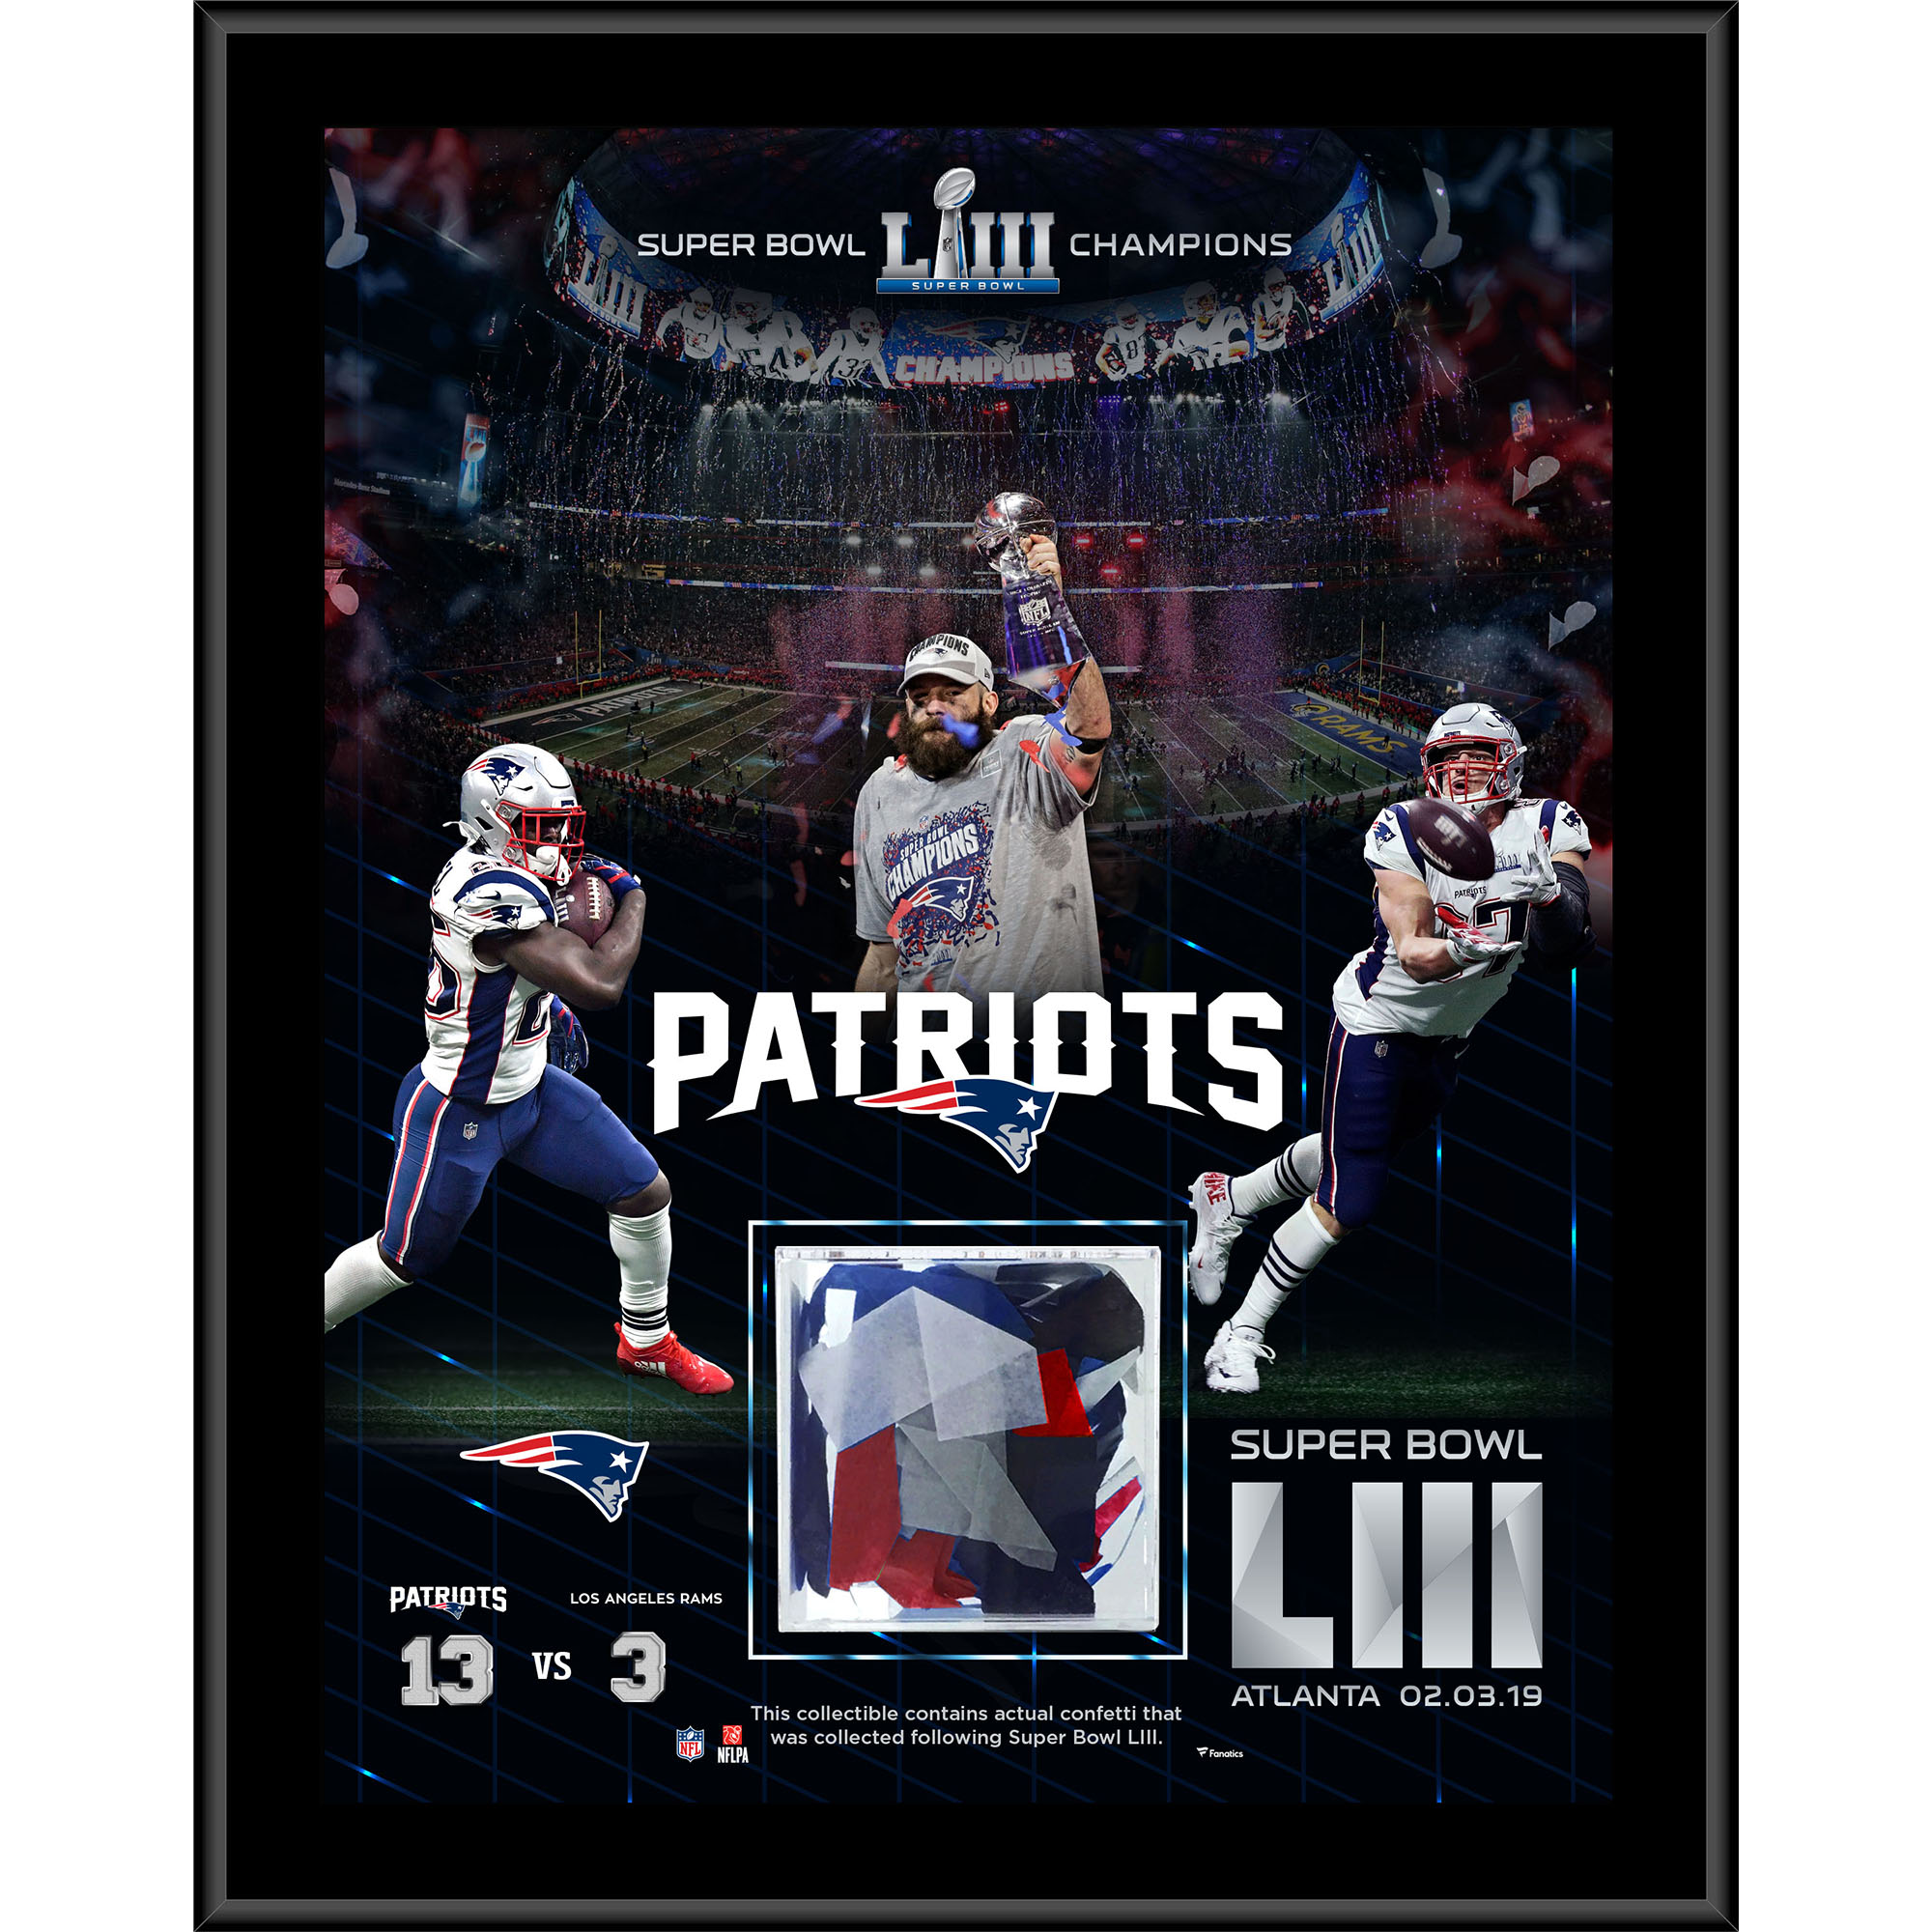 12 x 15 Zoll große sublimierte Plakette der New England Patriots, Super Bowl LIII-Champions, mit beim Spiel verwendetem Konfetti